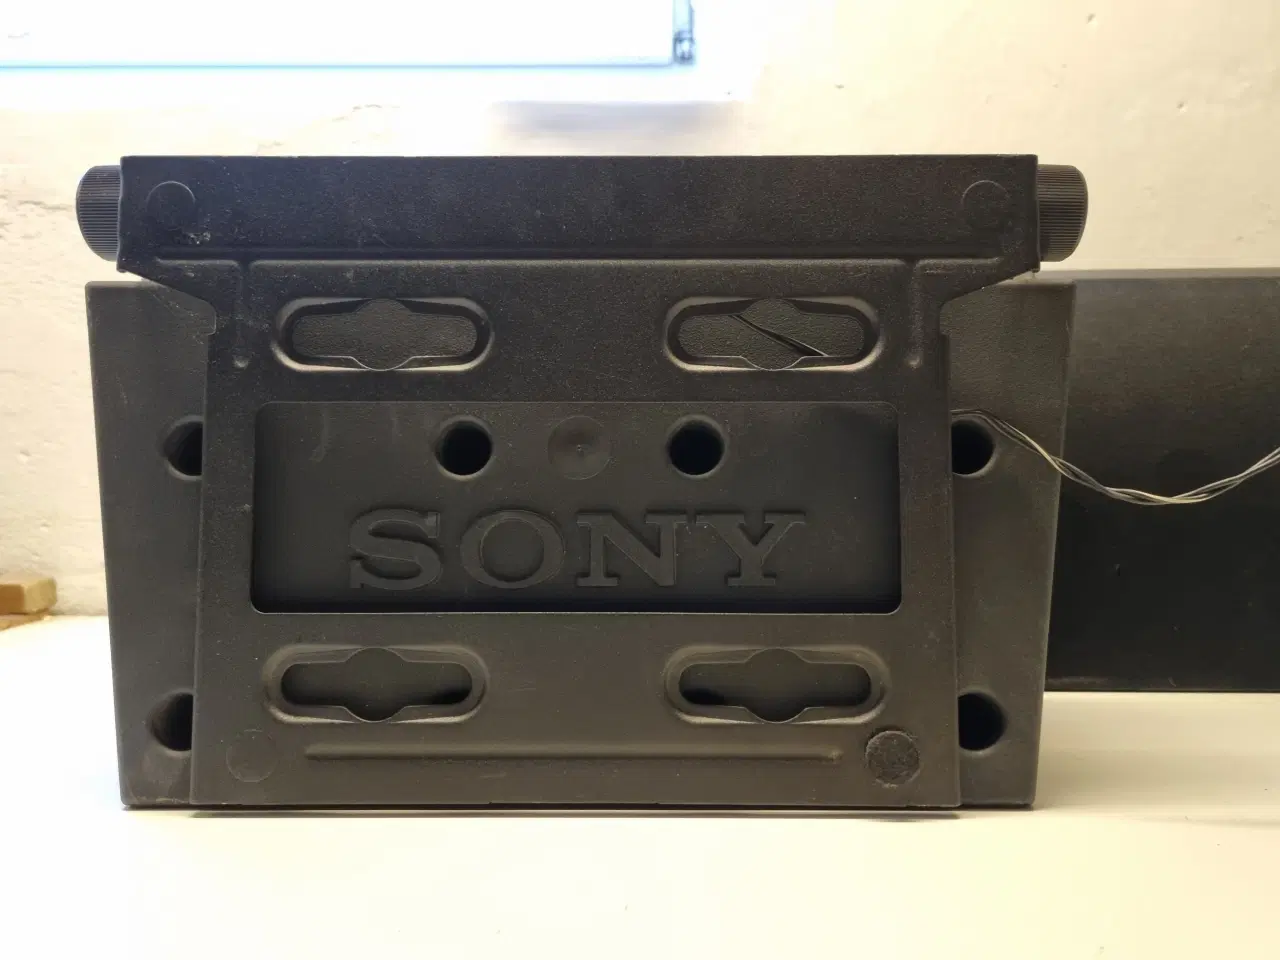 Billede 6 - Sony Surround forstærker inklusiv højtalere.